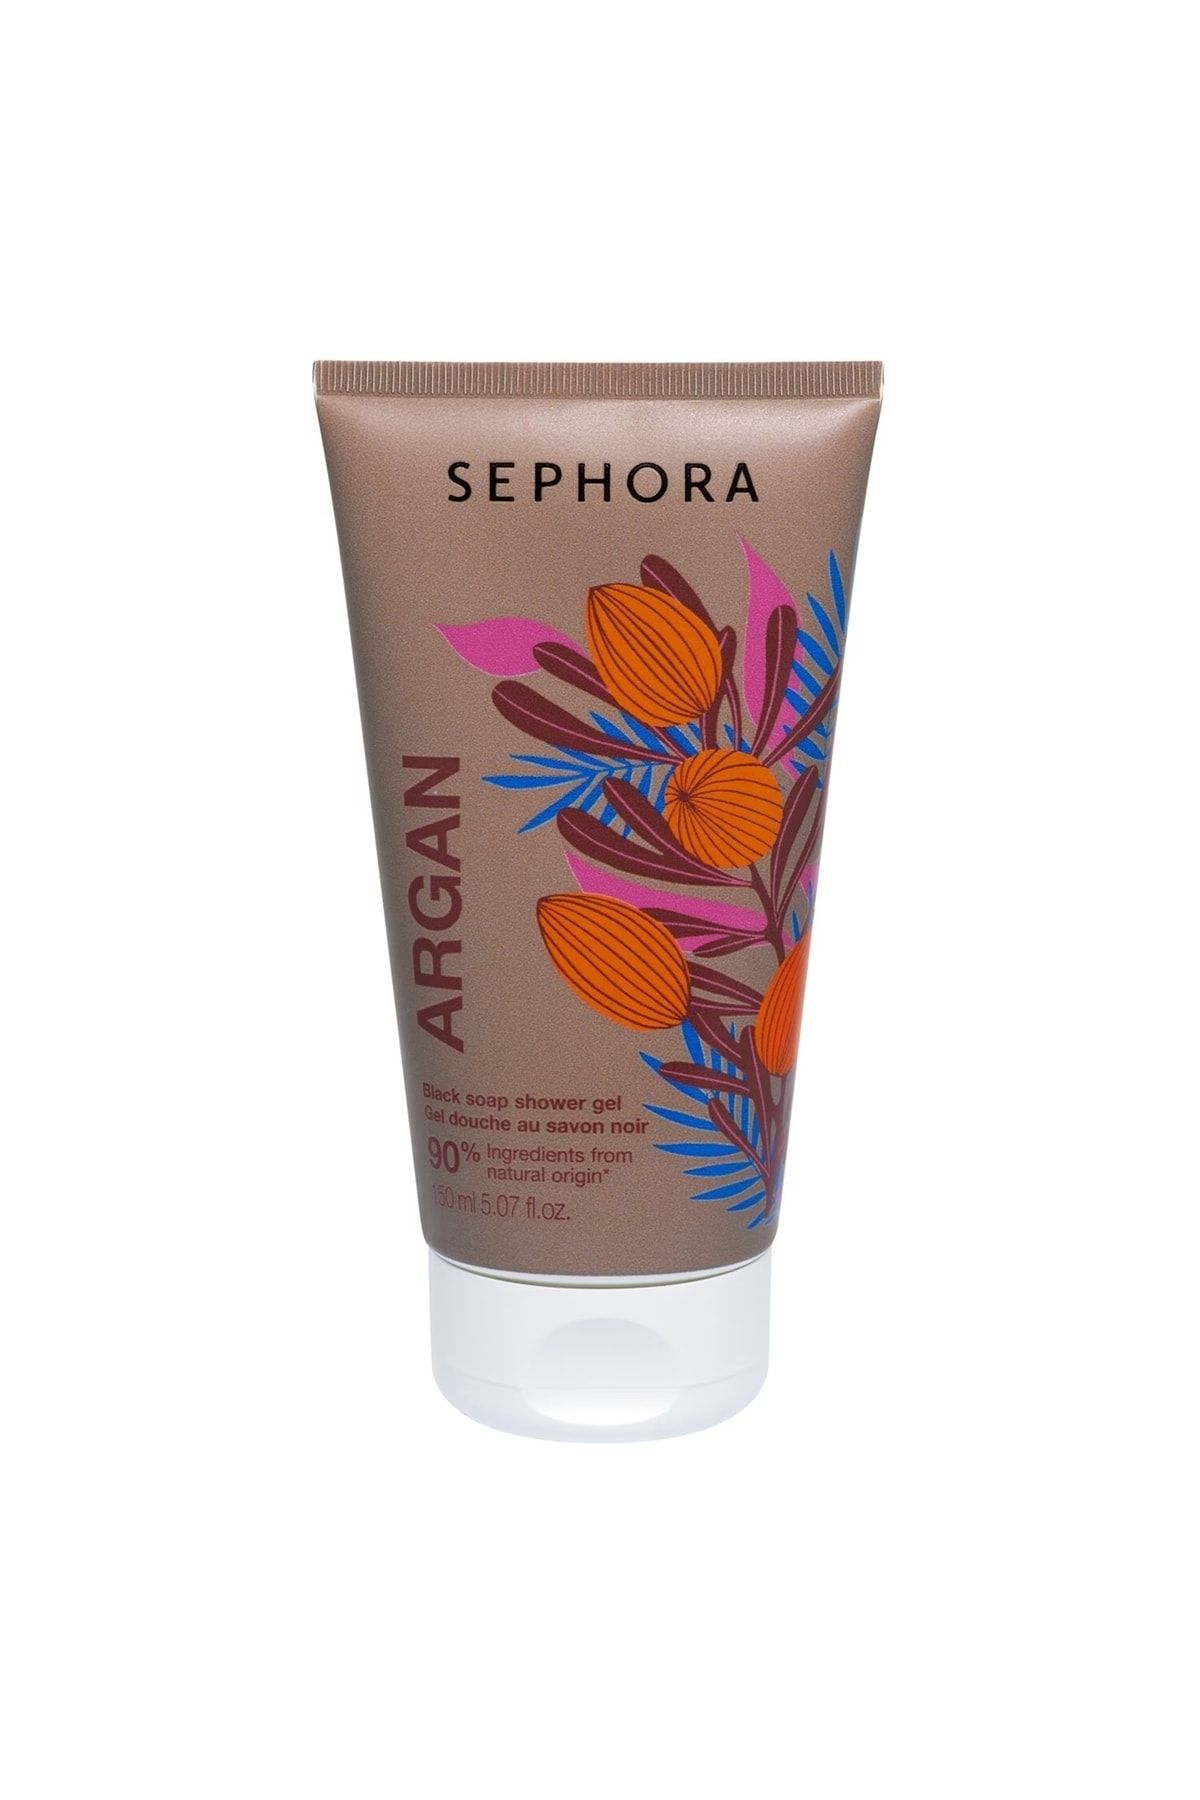 Sephora Black Soap Shower Gel/duş Jeli Argan 150 Ml - Benim Ol